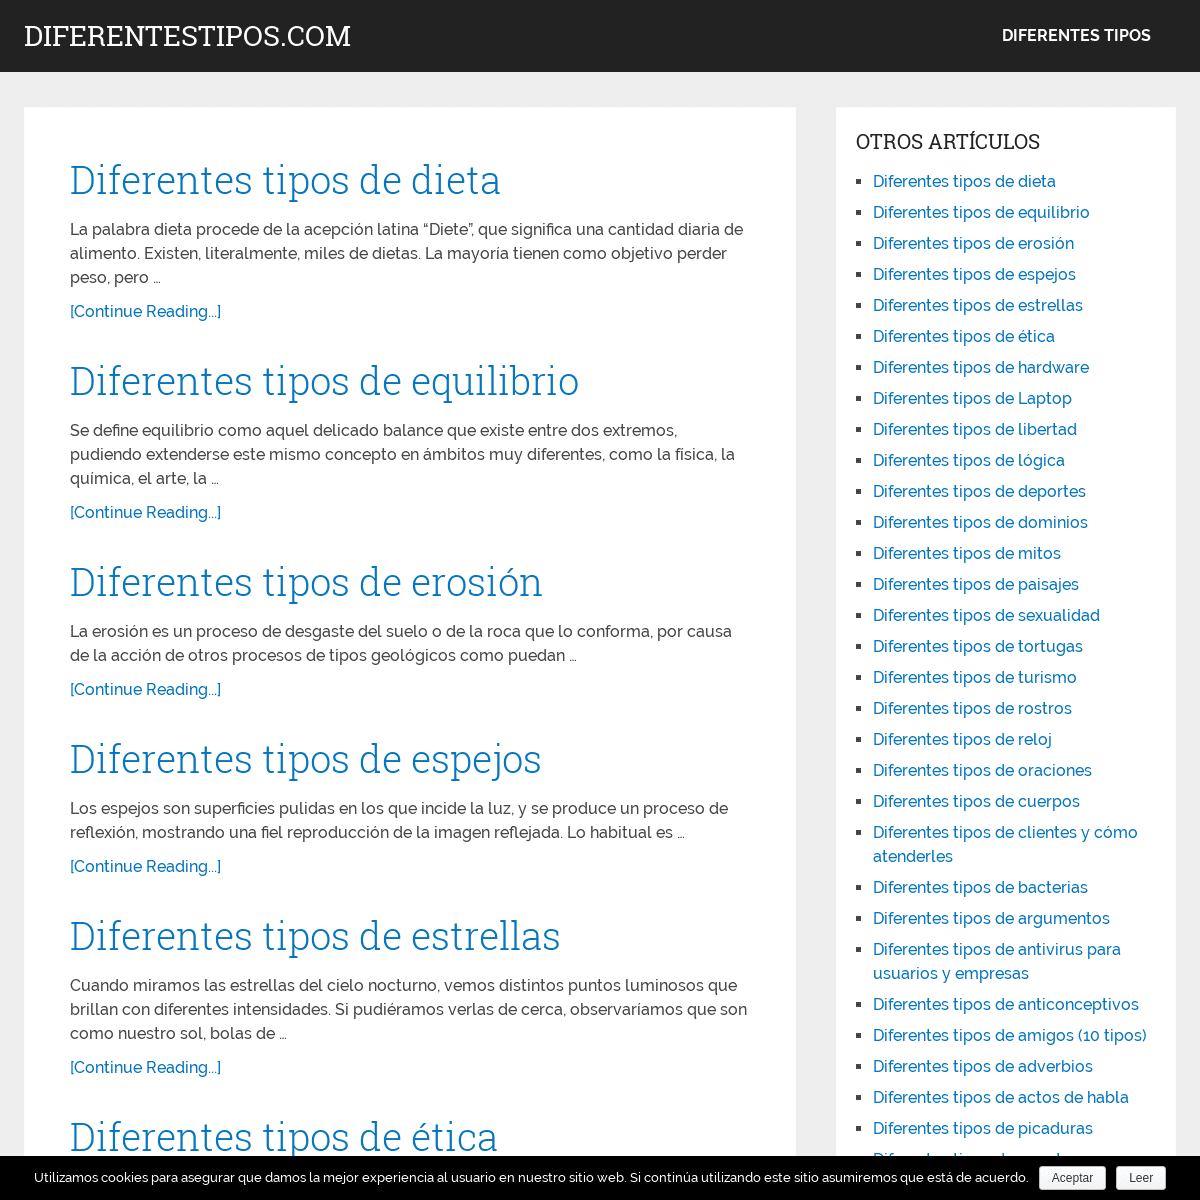 A complete backup of diferentestipos.com